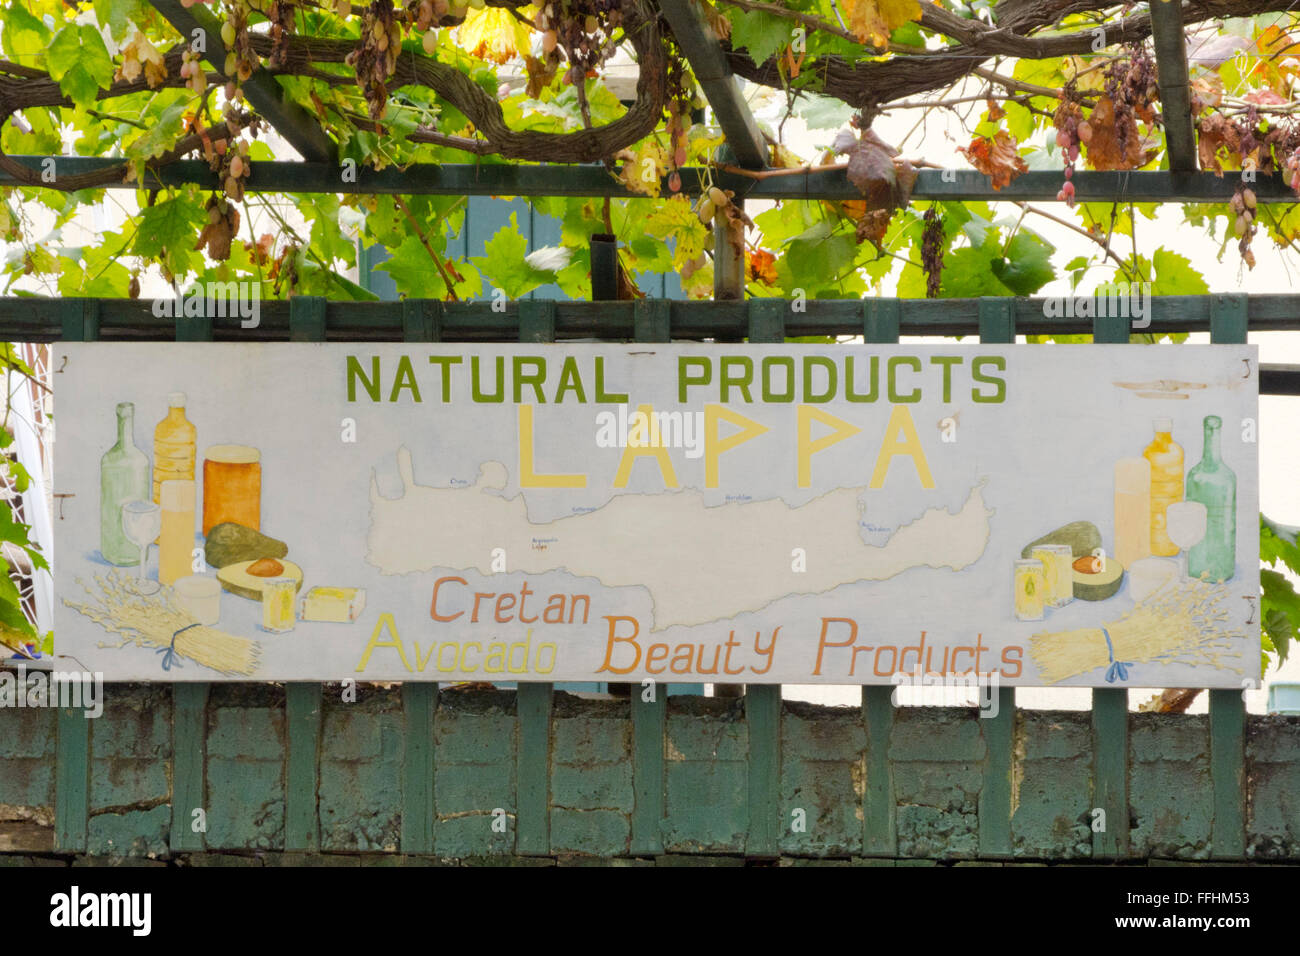 Griechenland, Kreta, Argiroupoli, Lappa Avocado Kosmetikprodukte verkauft aus Avocado die selbst angebaut werden. Foto Stock